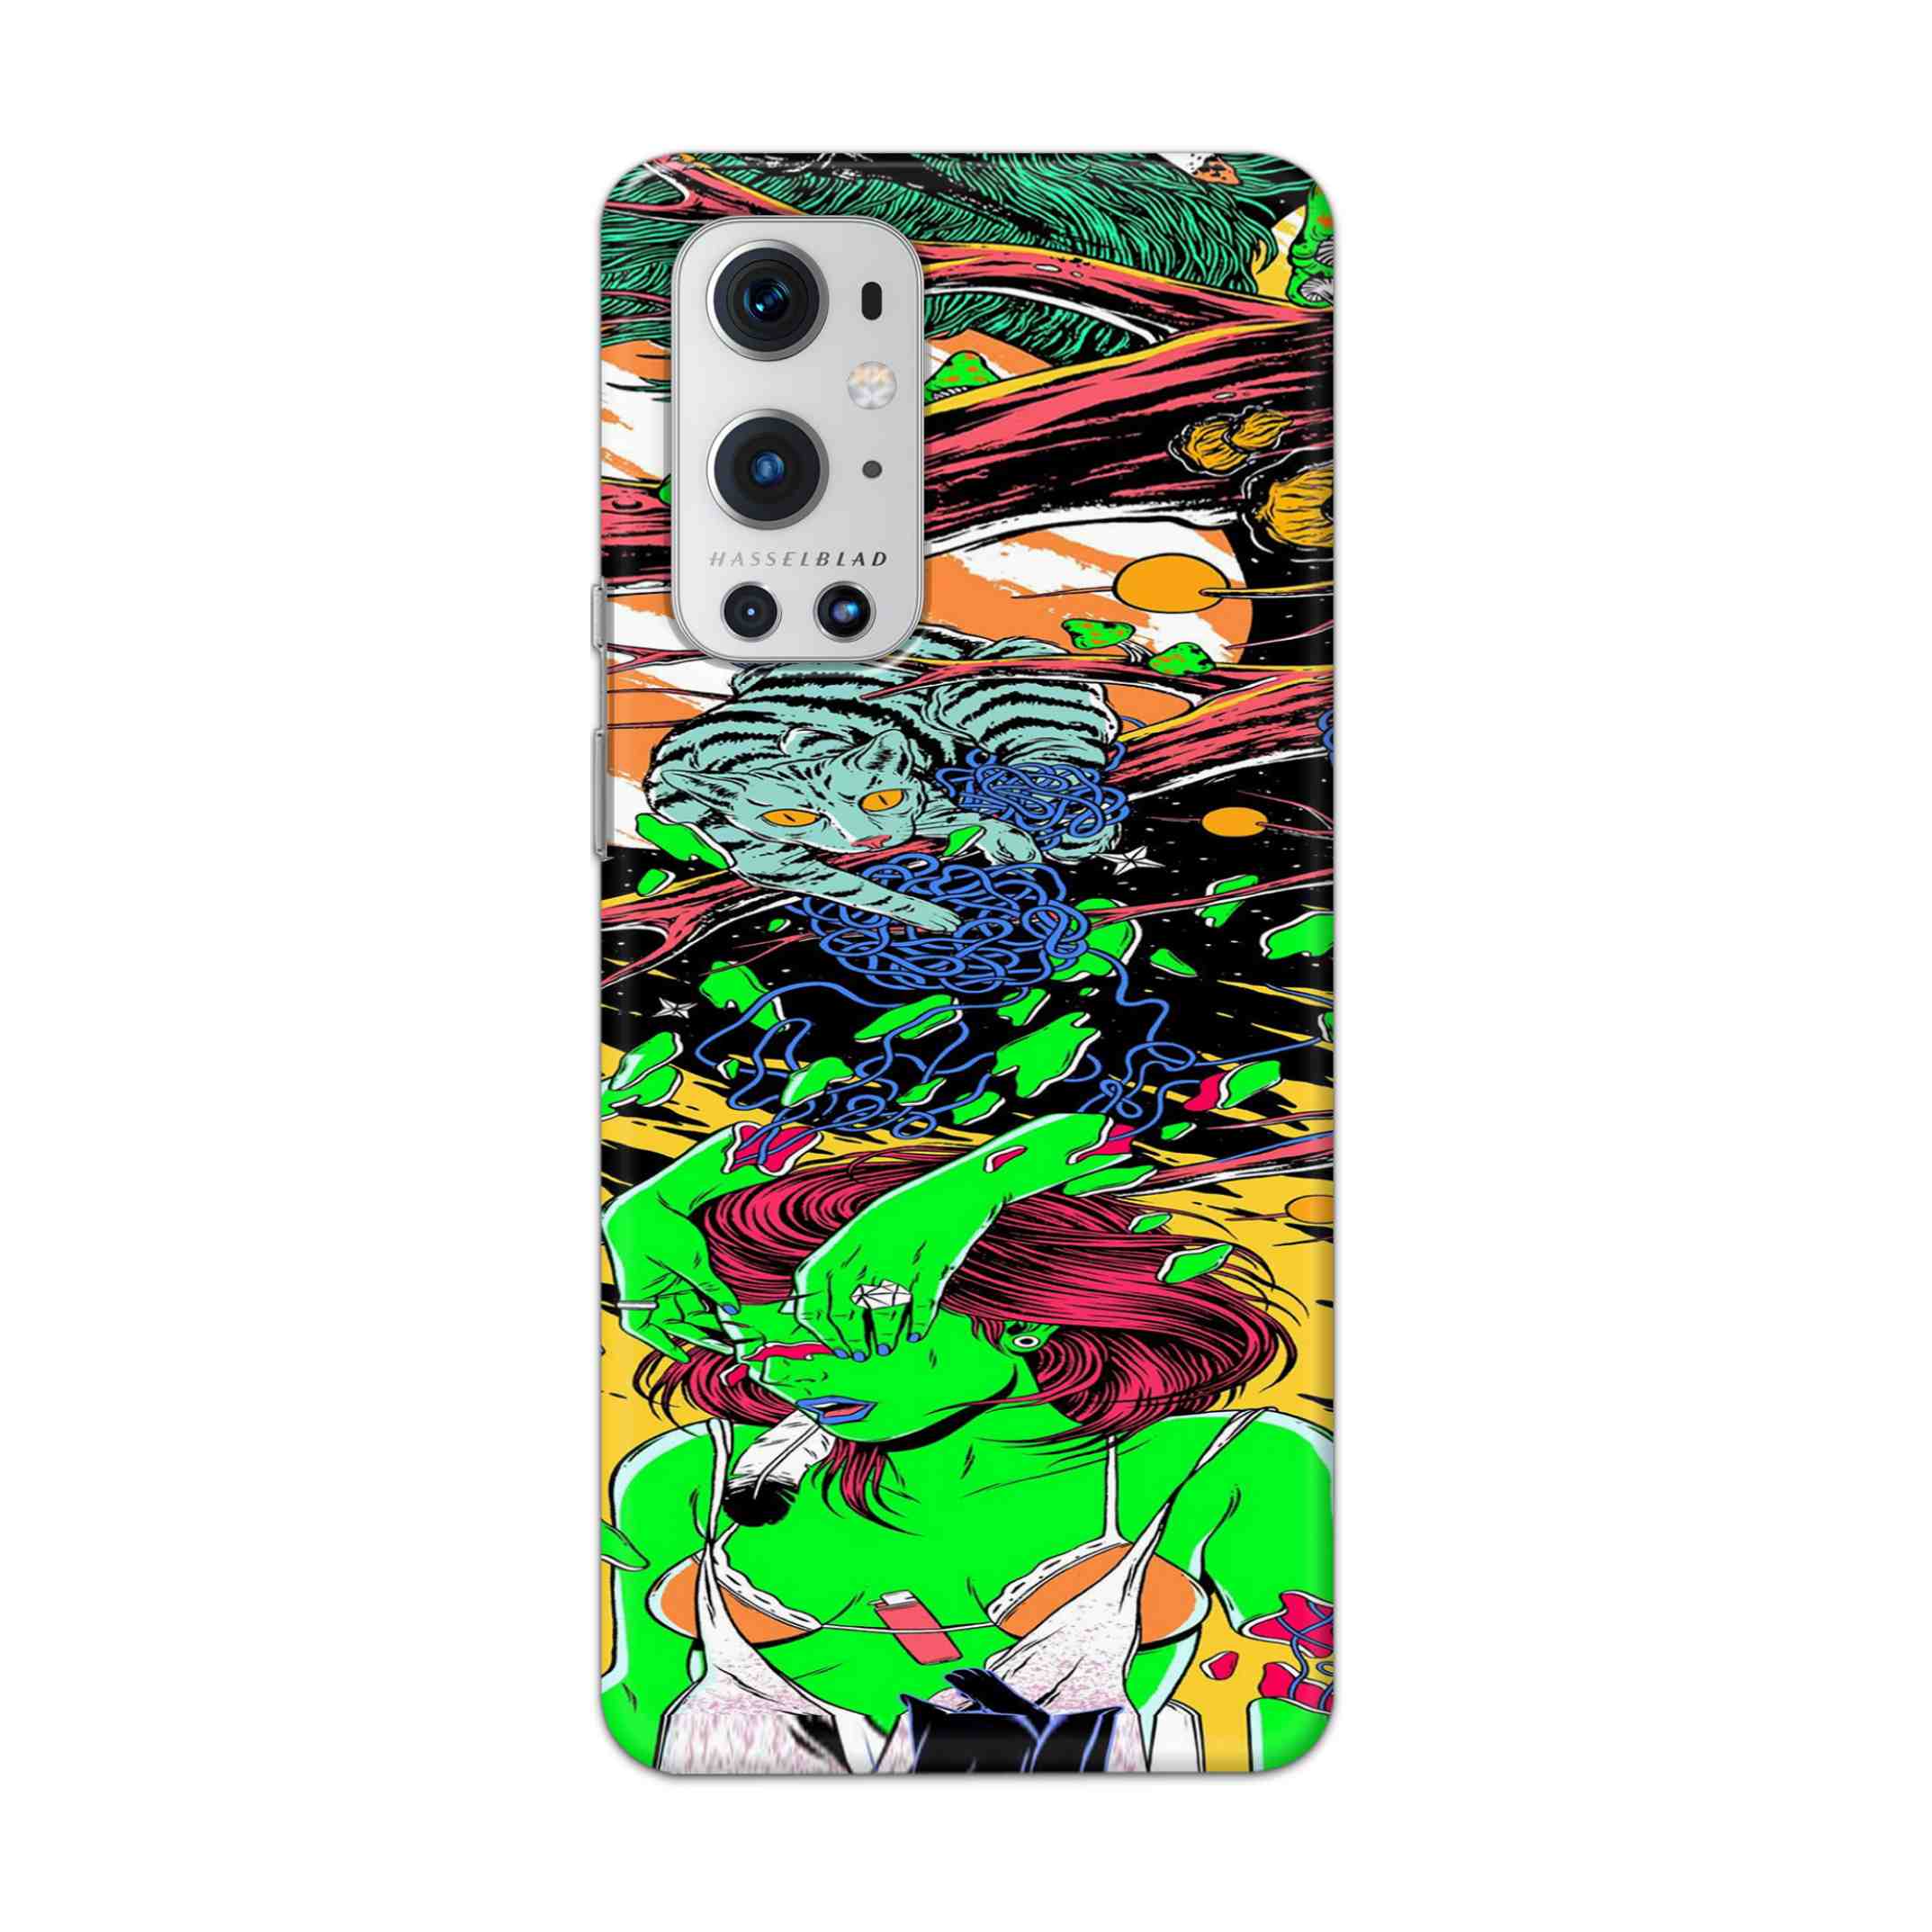 Buy Green Girl Art Hard Back Mobile Phone Case Cover For OnePlus 9 Pro Online